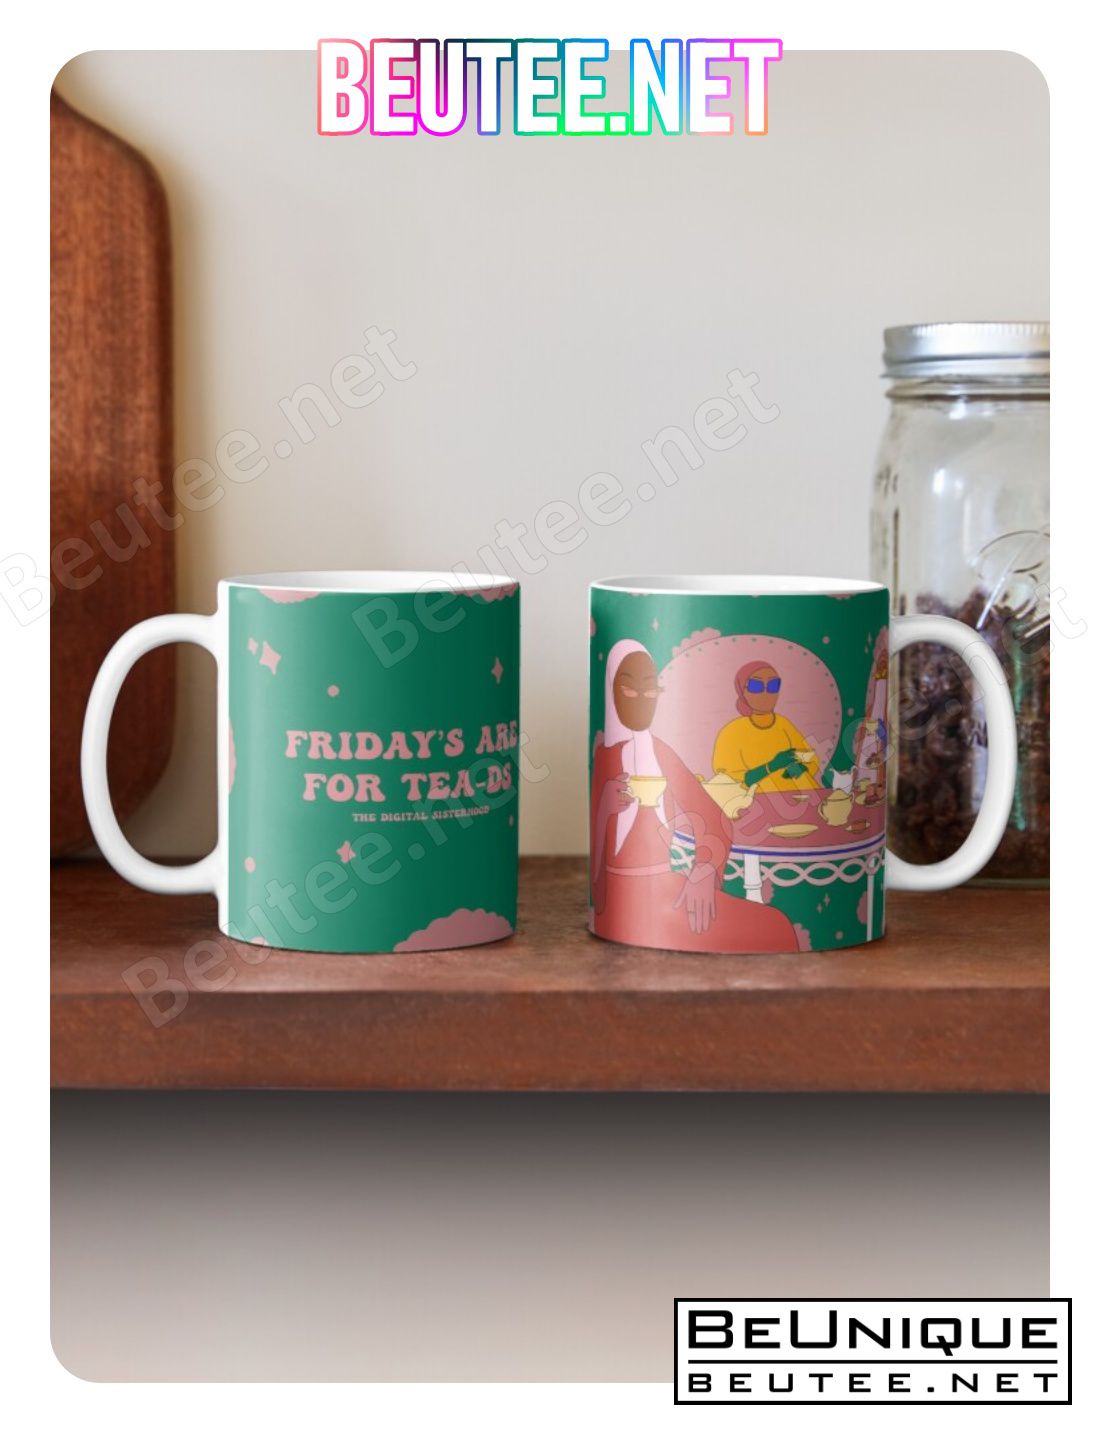 Fridays Are For Tea-ds Mug Coffee Mug